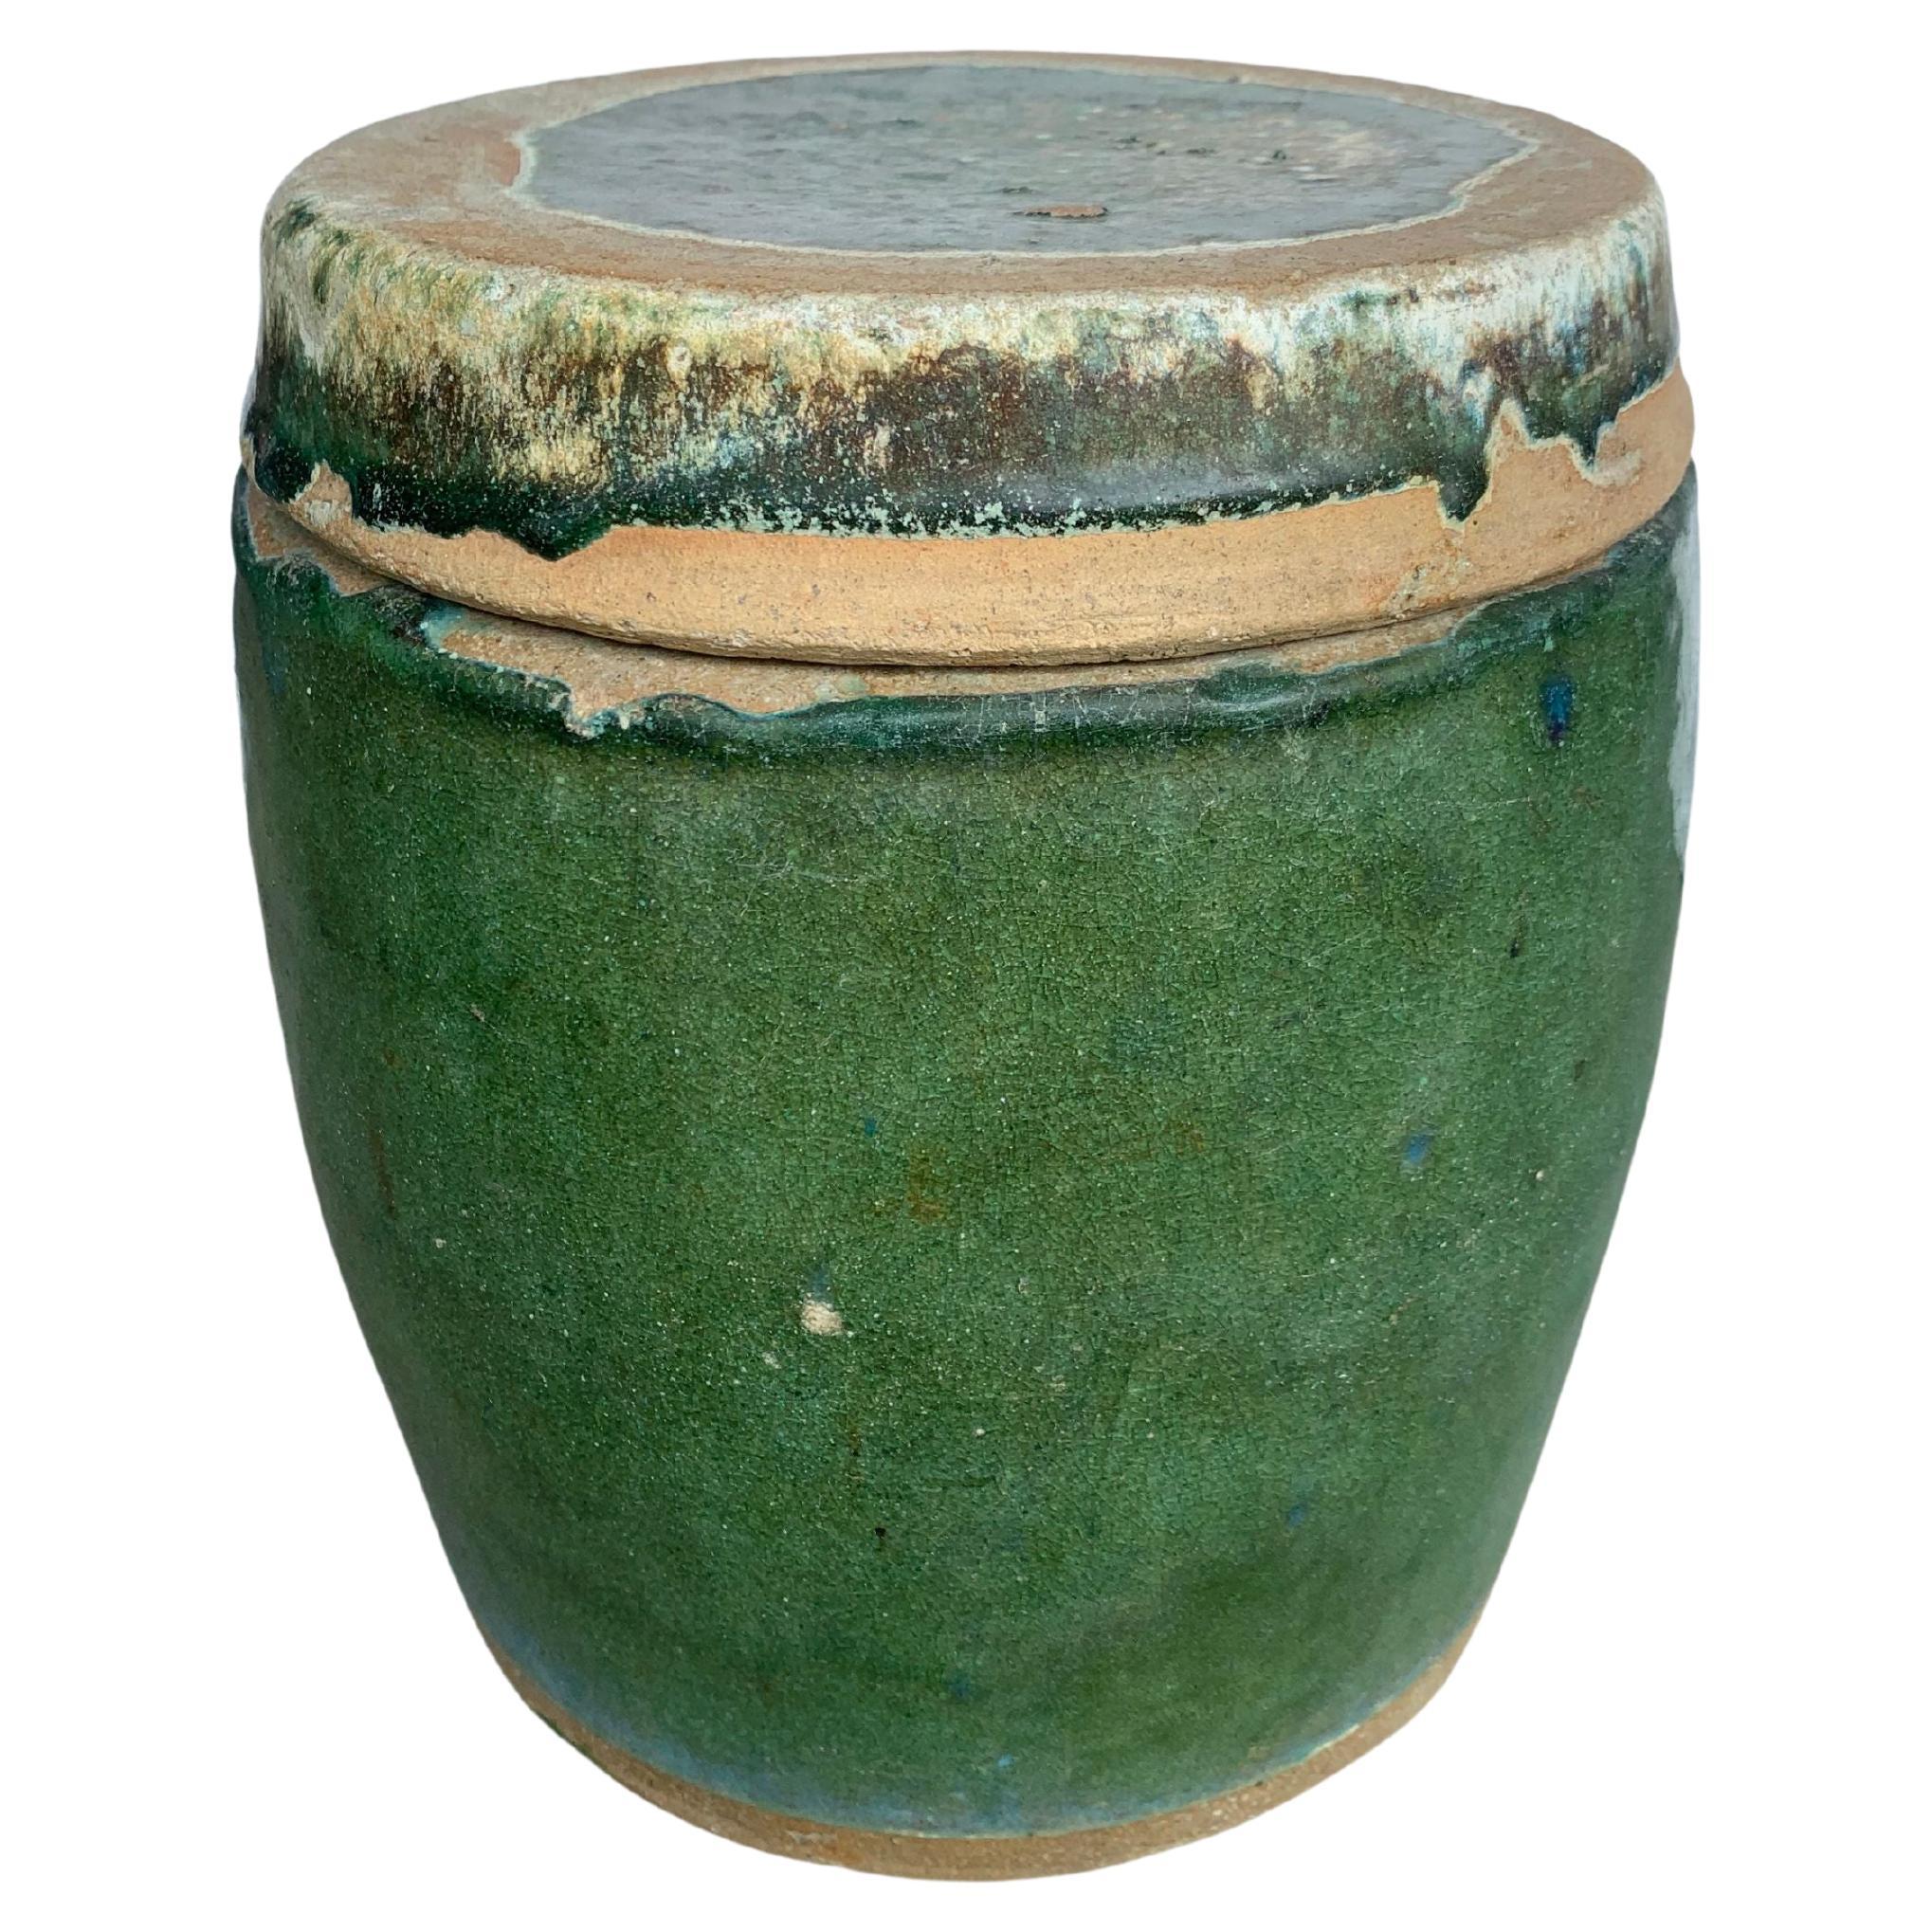 Chinesisches, grün glasiertes chinesisches Shiwan-Keramikgefäß / Pflanzgefäß, um 1900